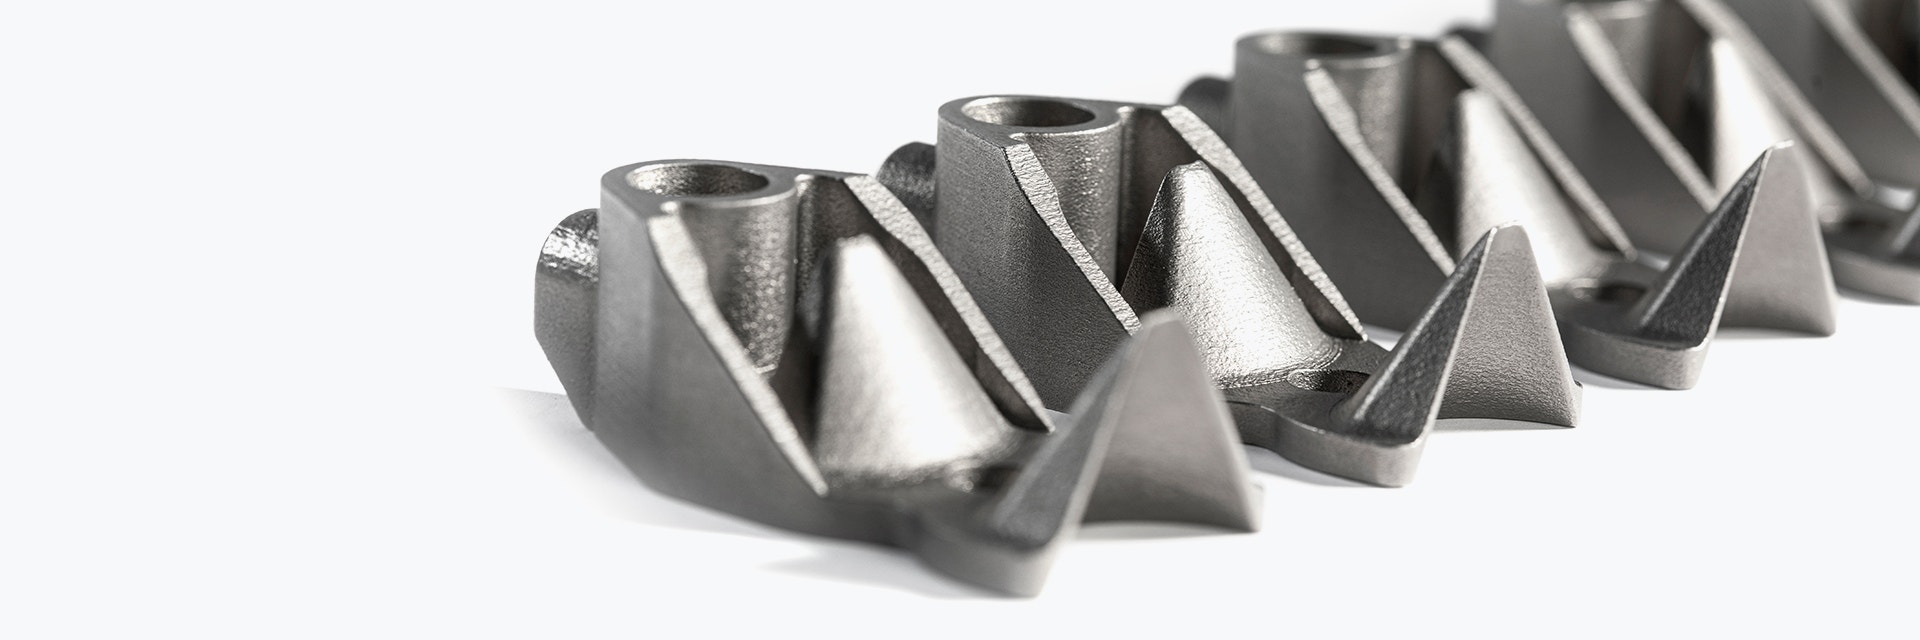 Fila di componenti in metallo stampati in 3D